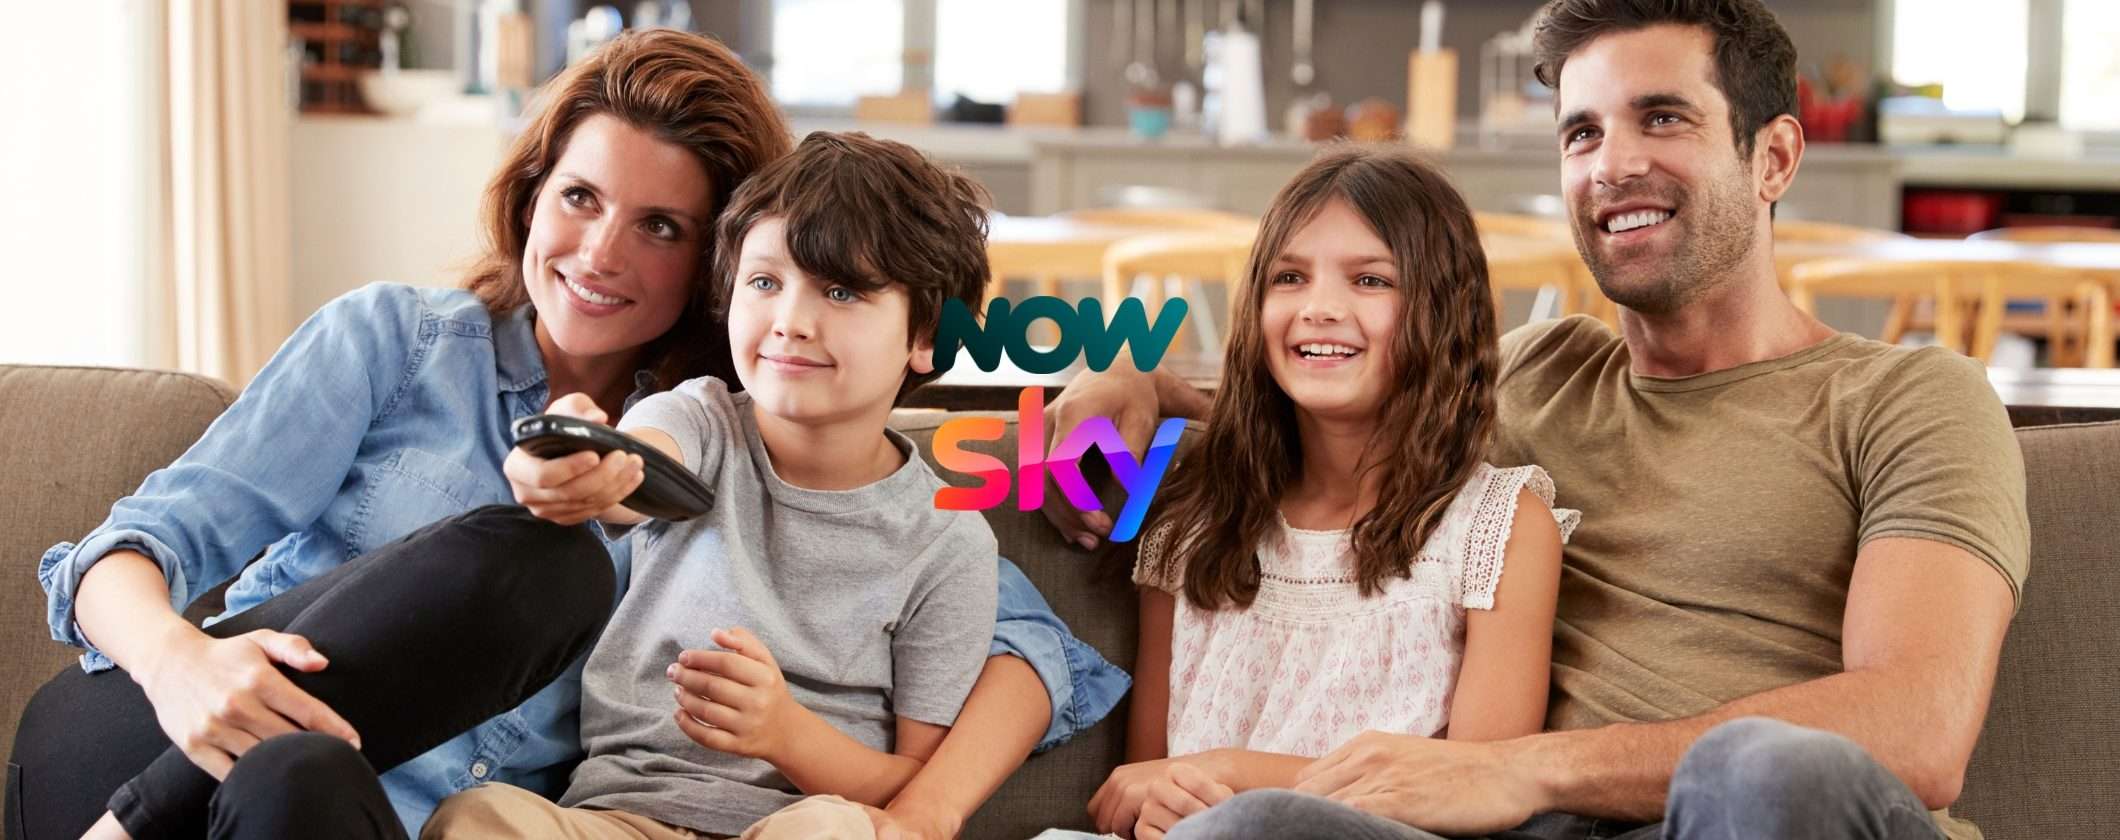 NOW TV e Sky: il calendario di film e serie TV in arrivo a ottobre